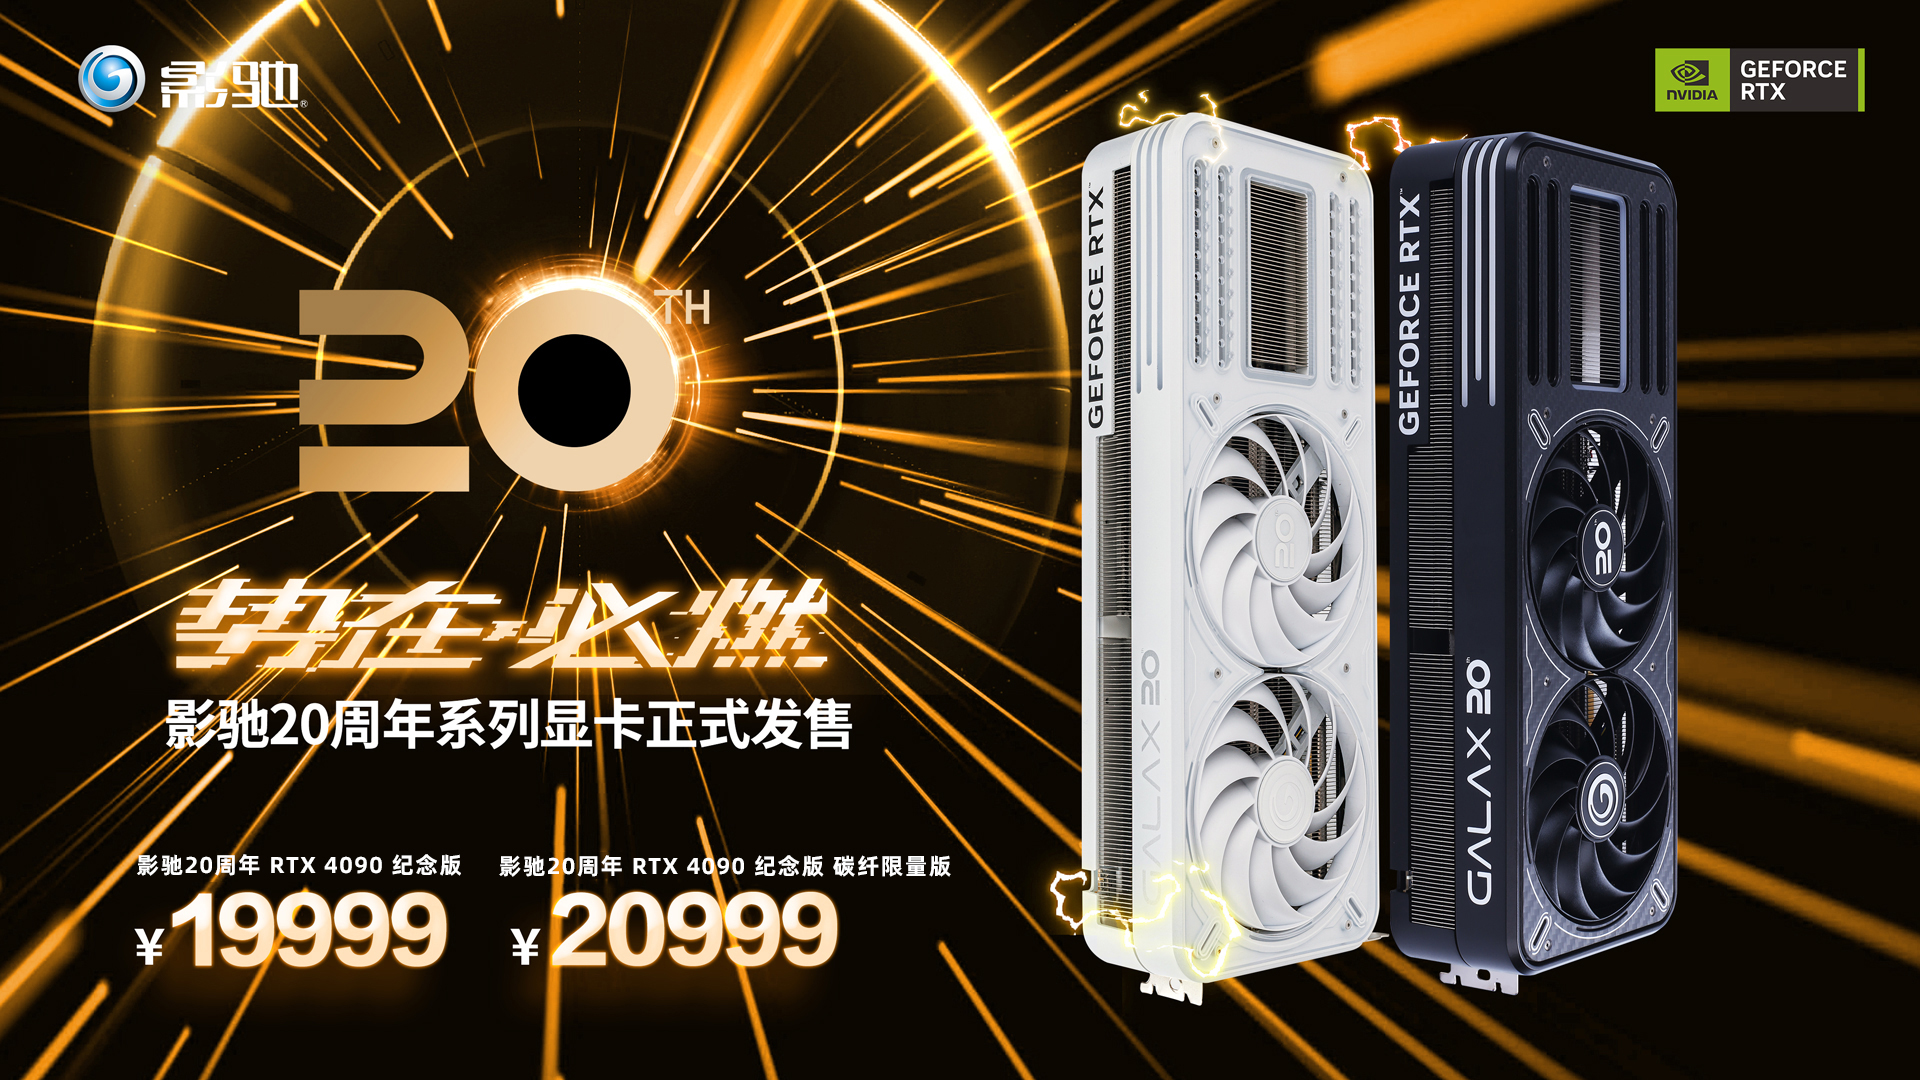 《势在必燃！影驰20周年GeForce RTX 4090显卡正式发售！》